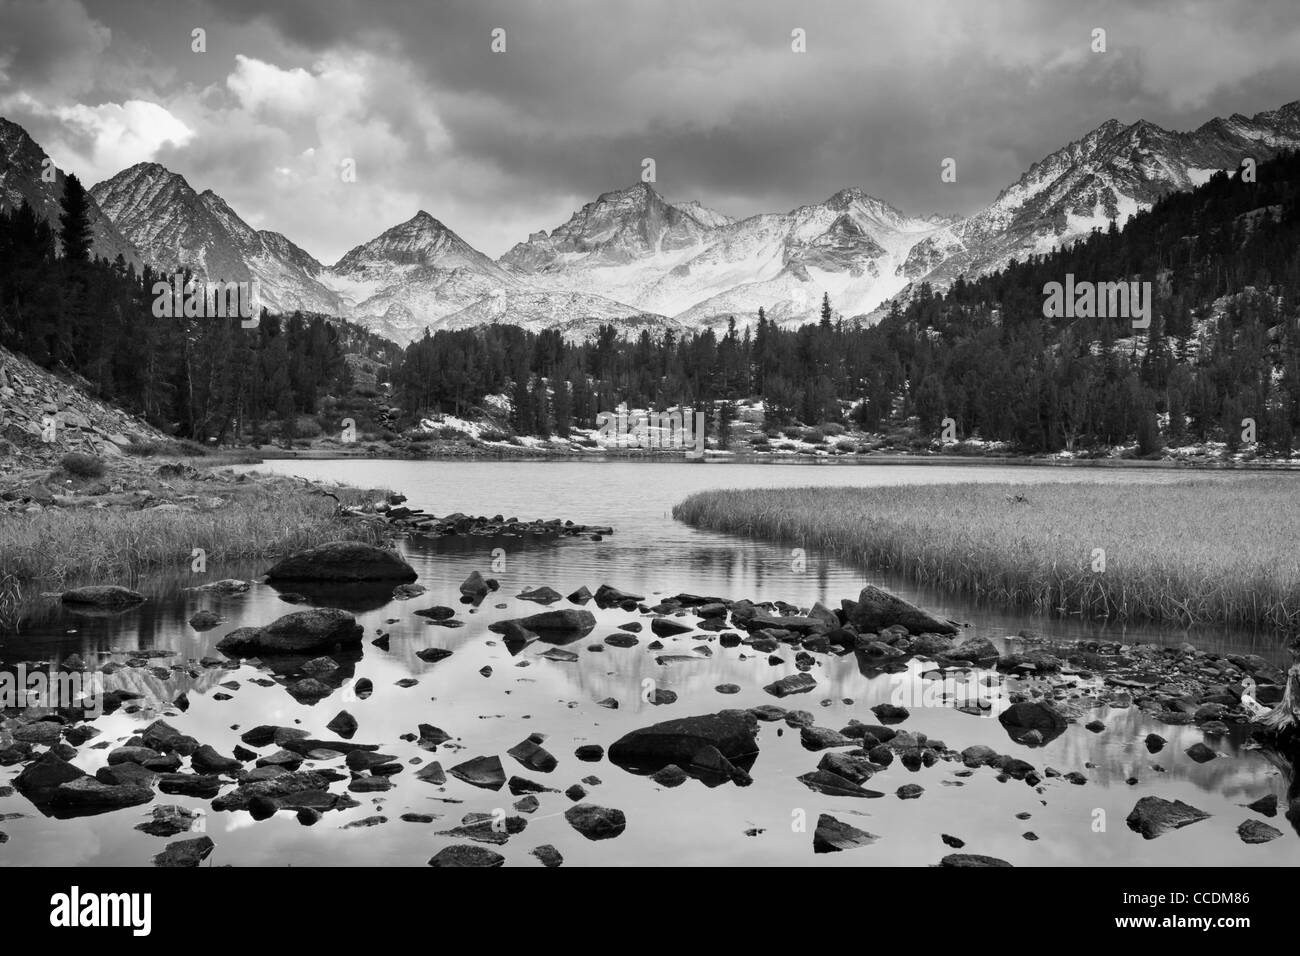 Drammatico paesaggio, Montagna in bianco e nero Foto Stock